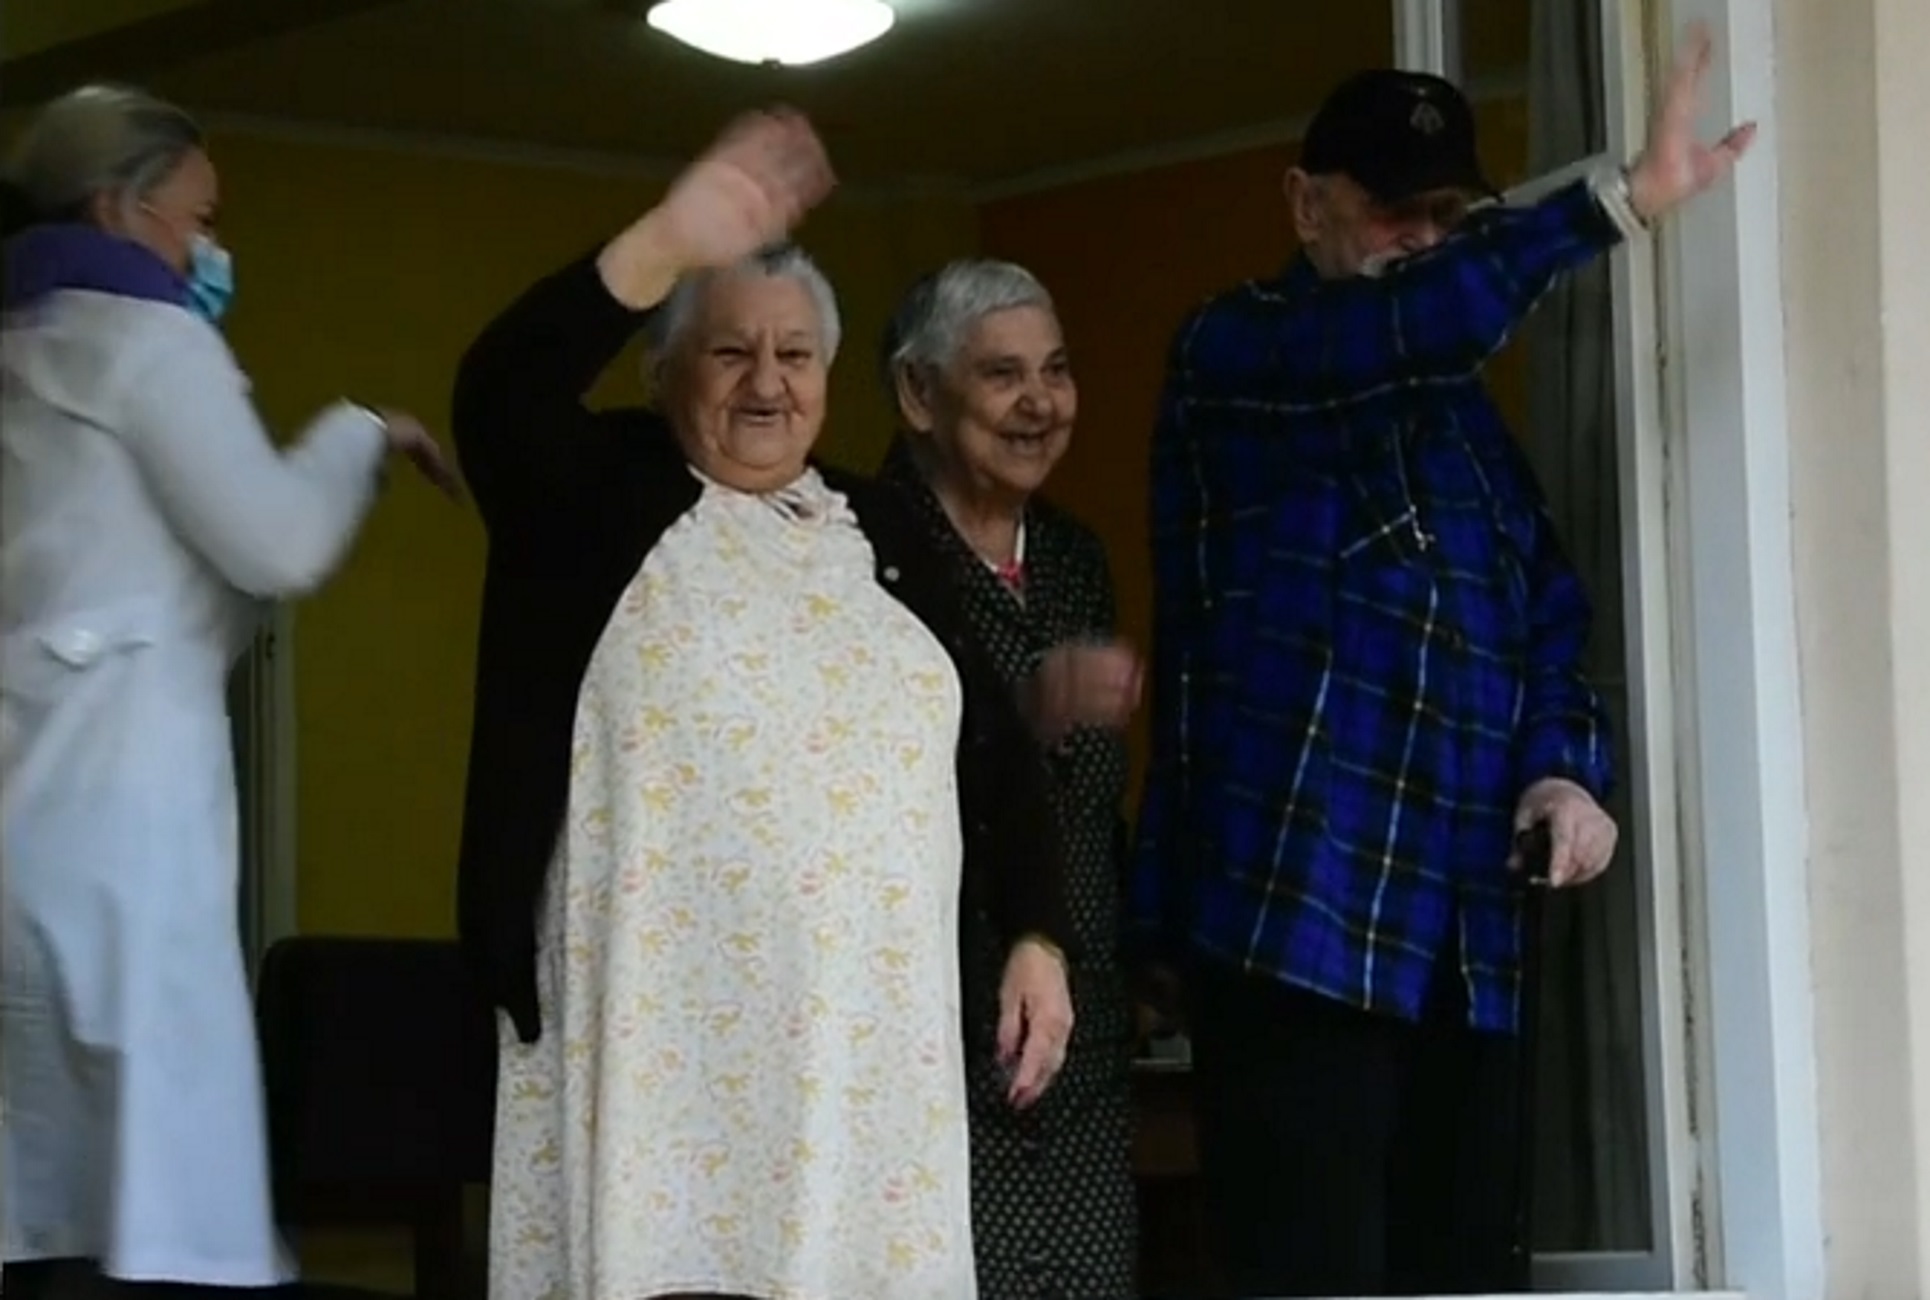 Ναύπλιο: Το γηροκομείο πλημμύρισε χαμόγελα από τη μια στιγμή στην άλλη – Η έκπληξη σε ηλικιωμένους